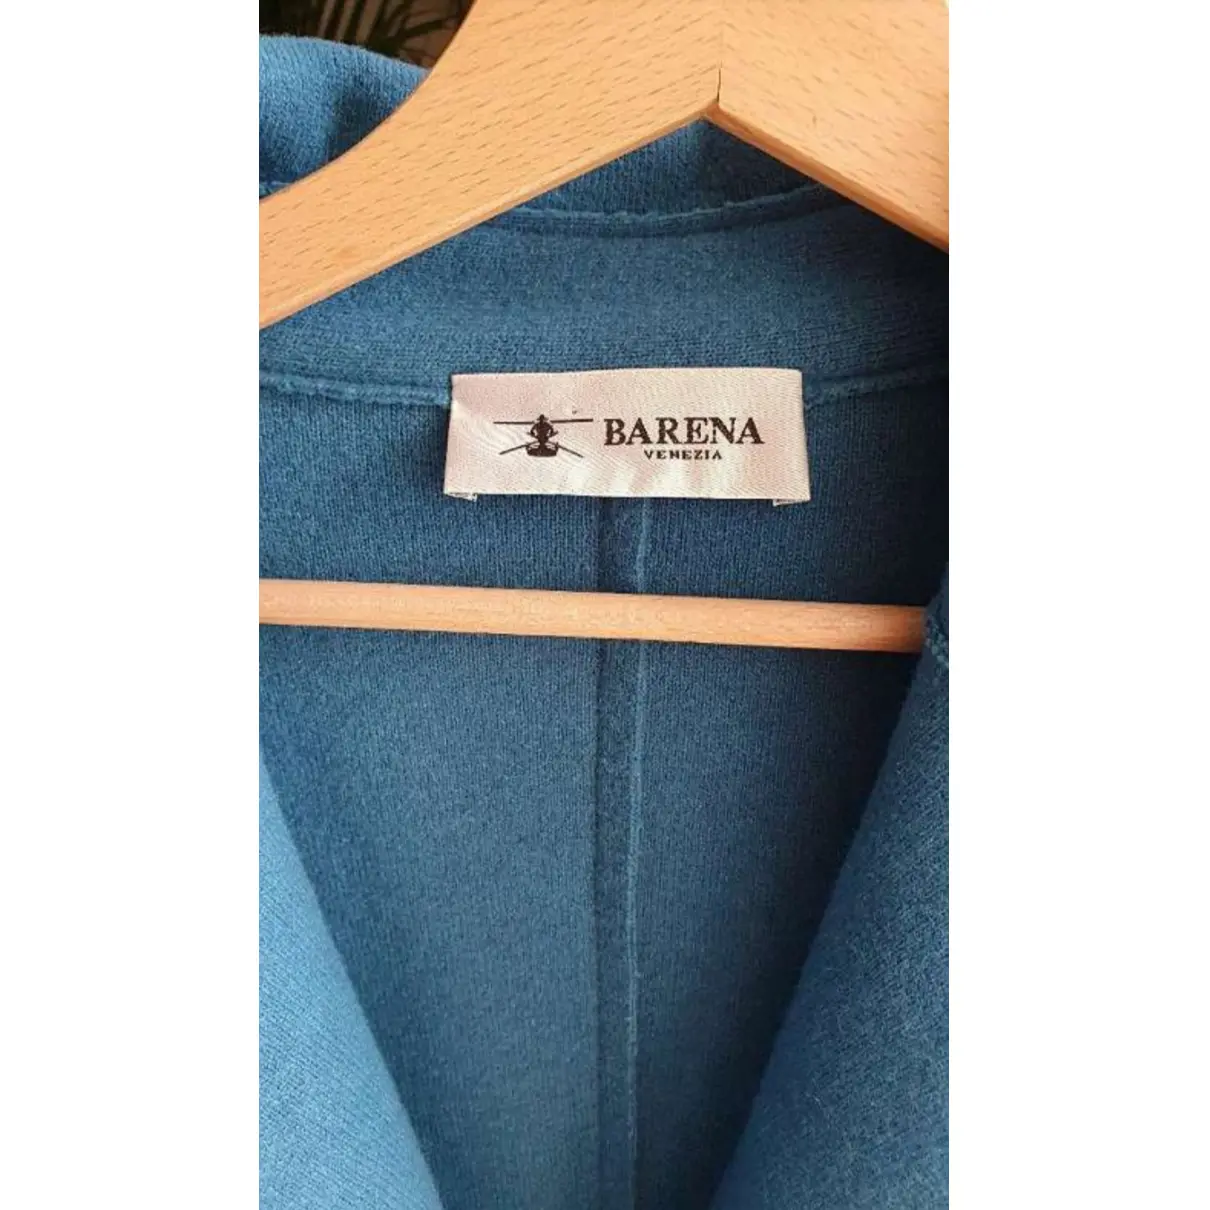 Buy Barena Coat online